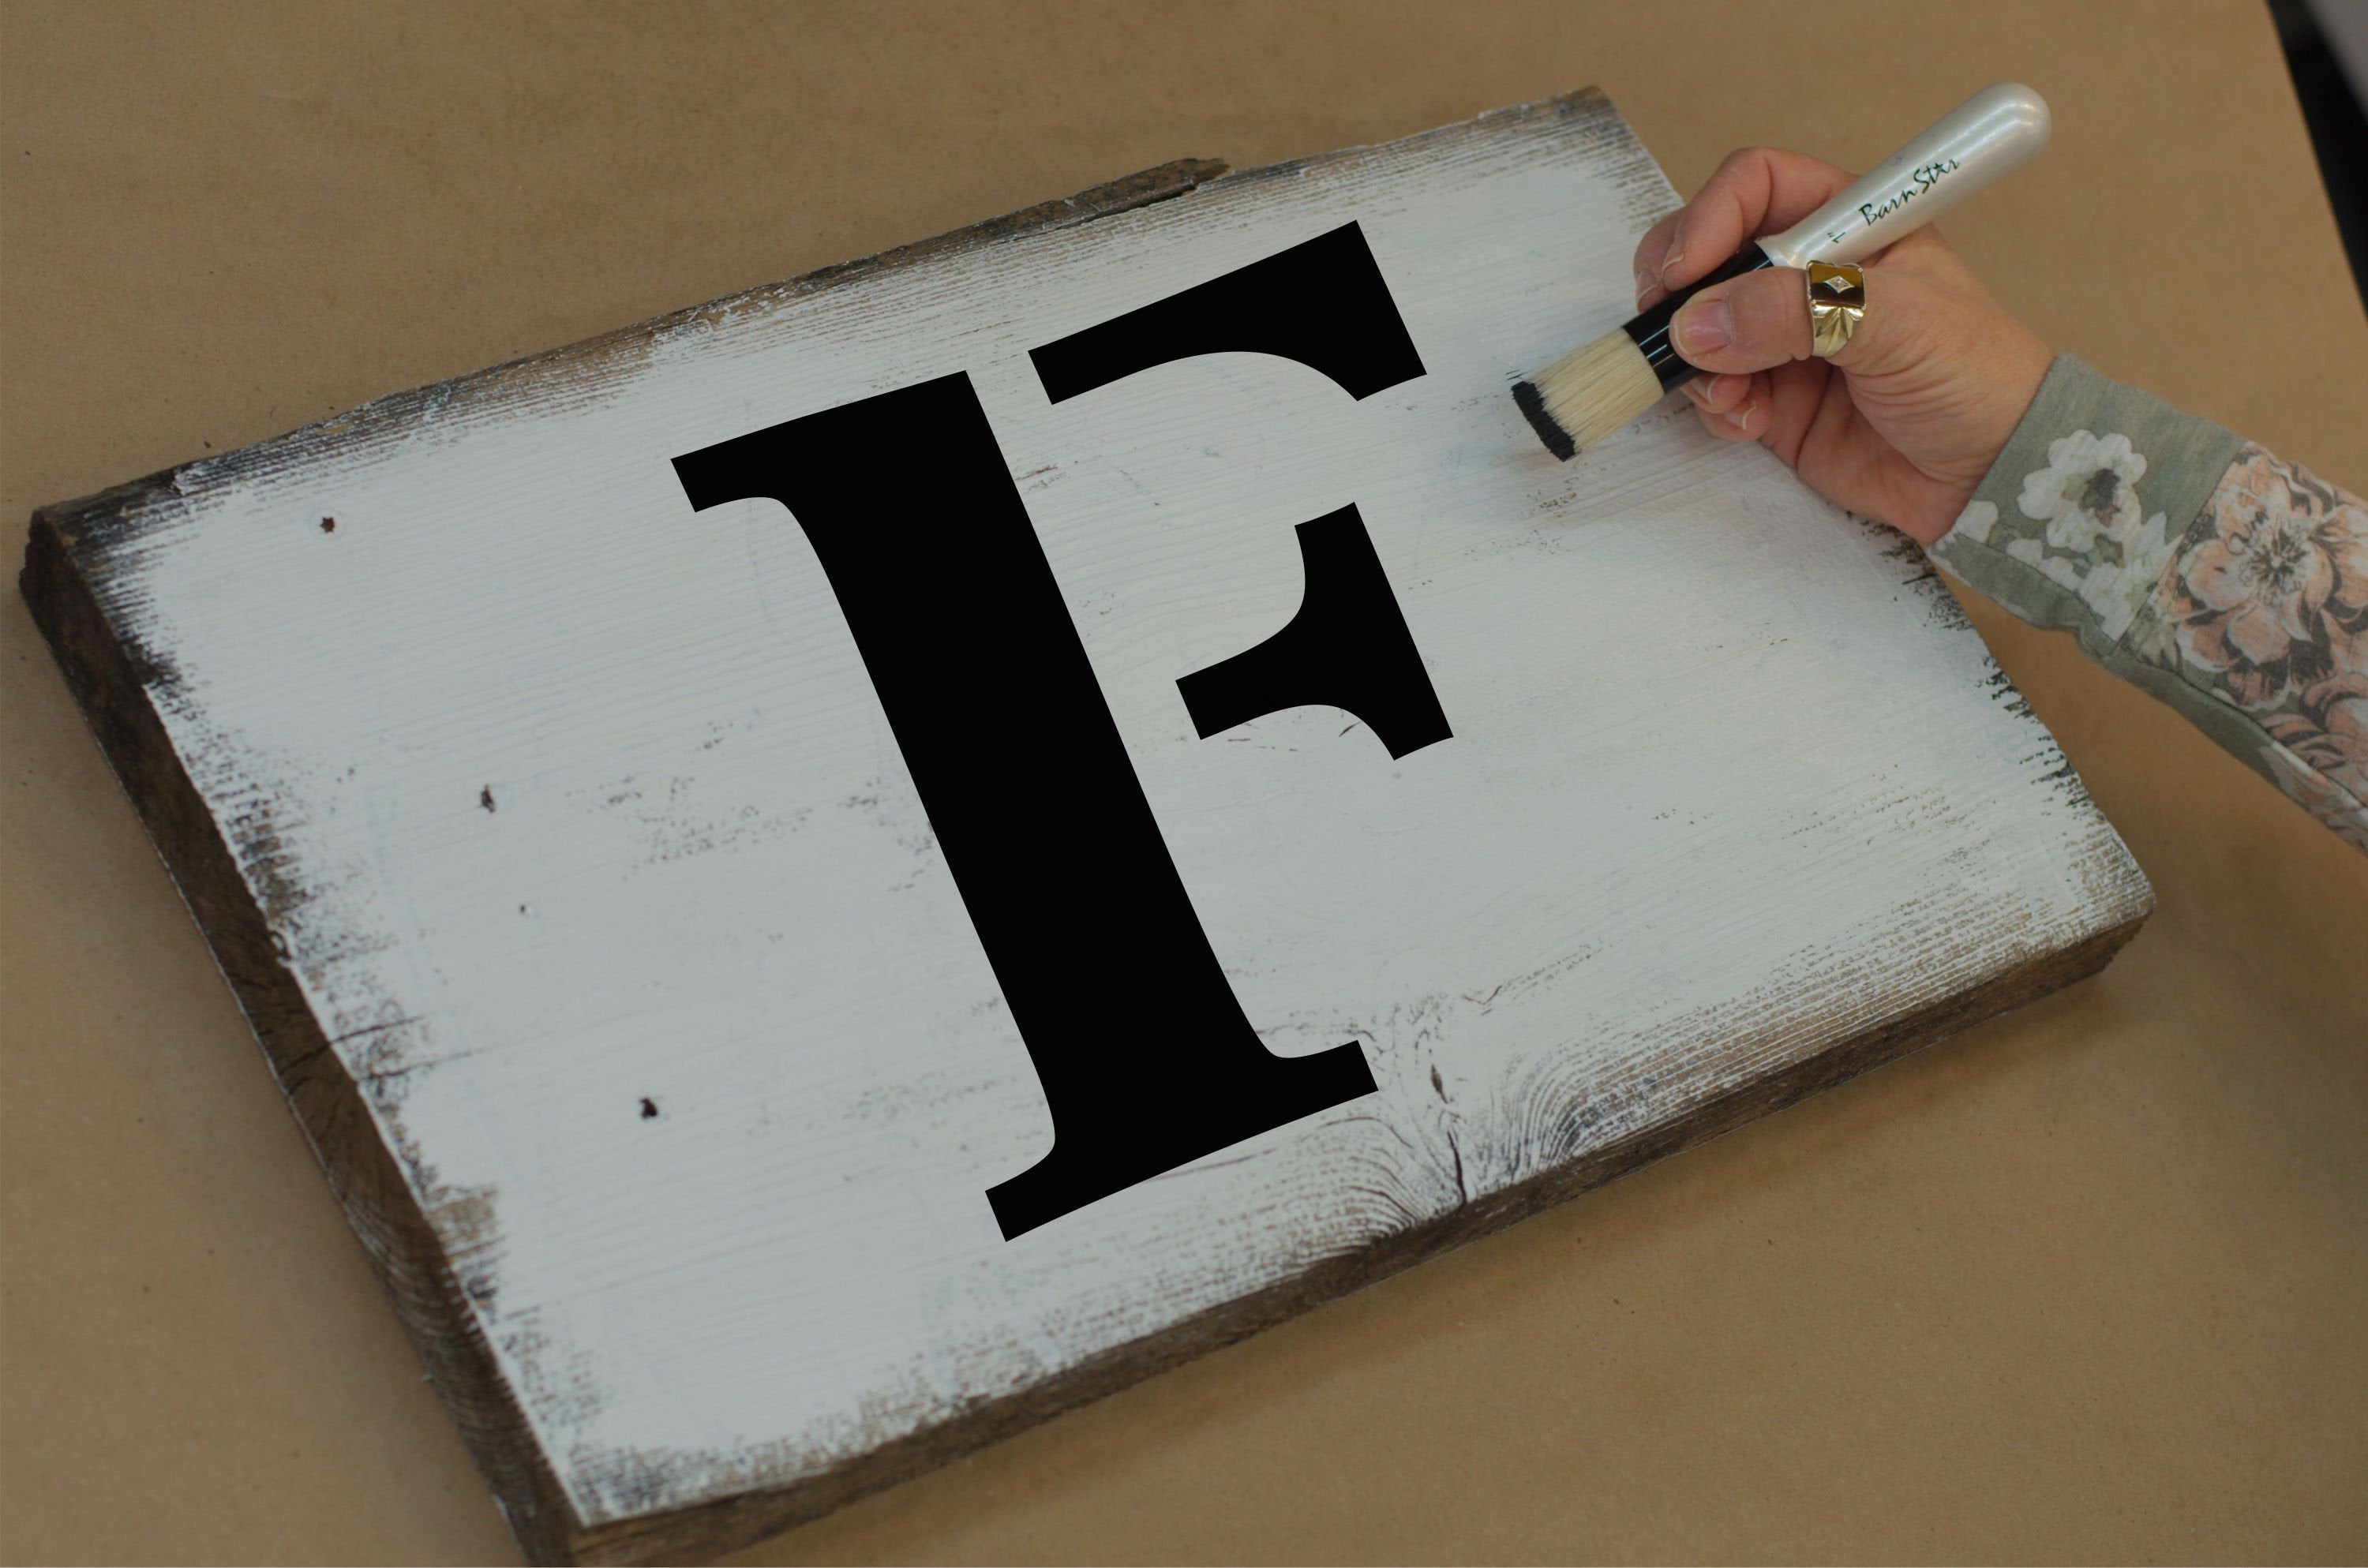 26 Piece Alphabet Letter Stencils Kit - 7 Inch Letters - Paint